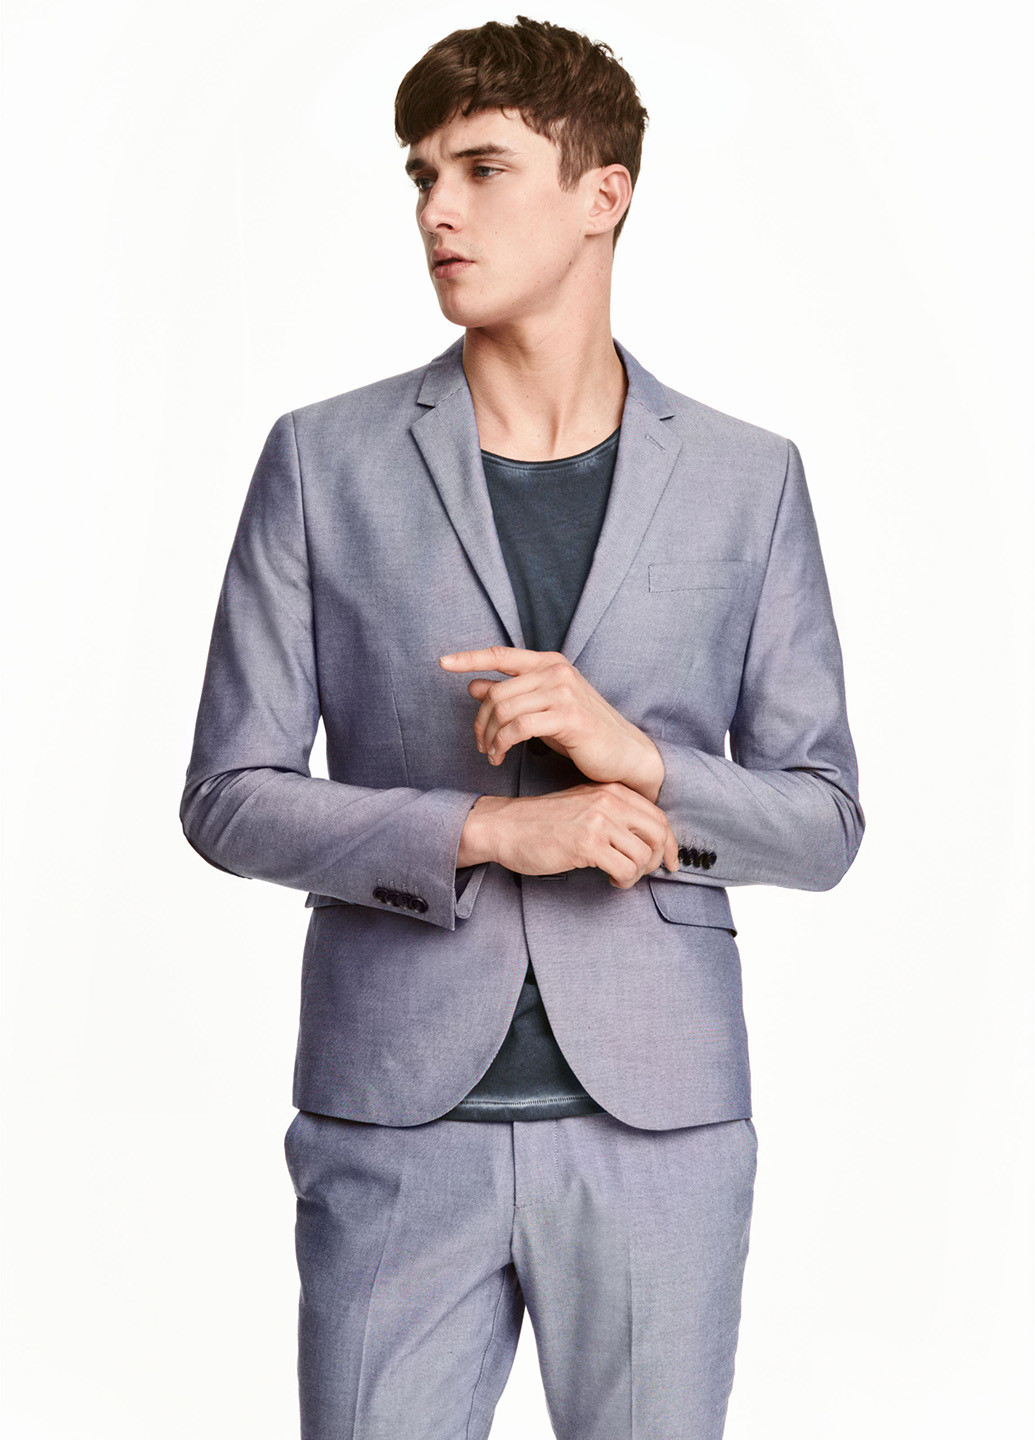 Пиджак H&M меланж серо-голубой деловой хлопок